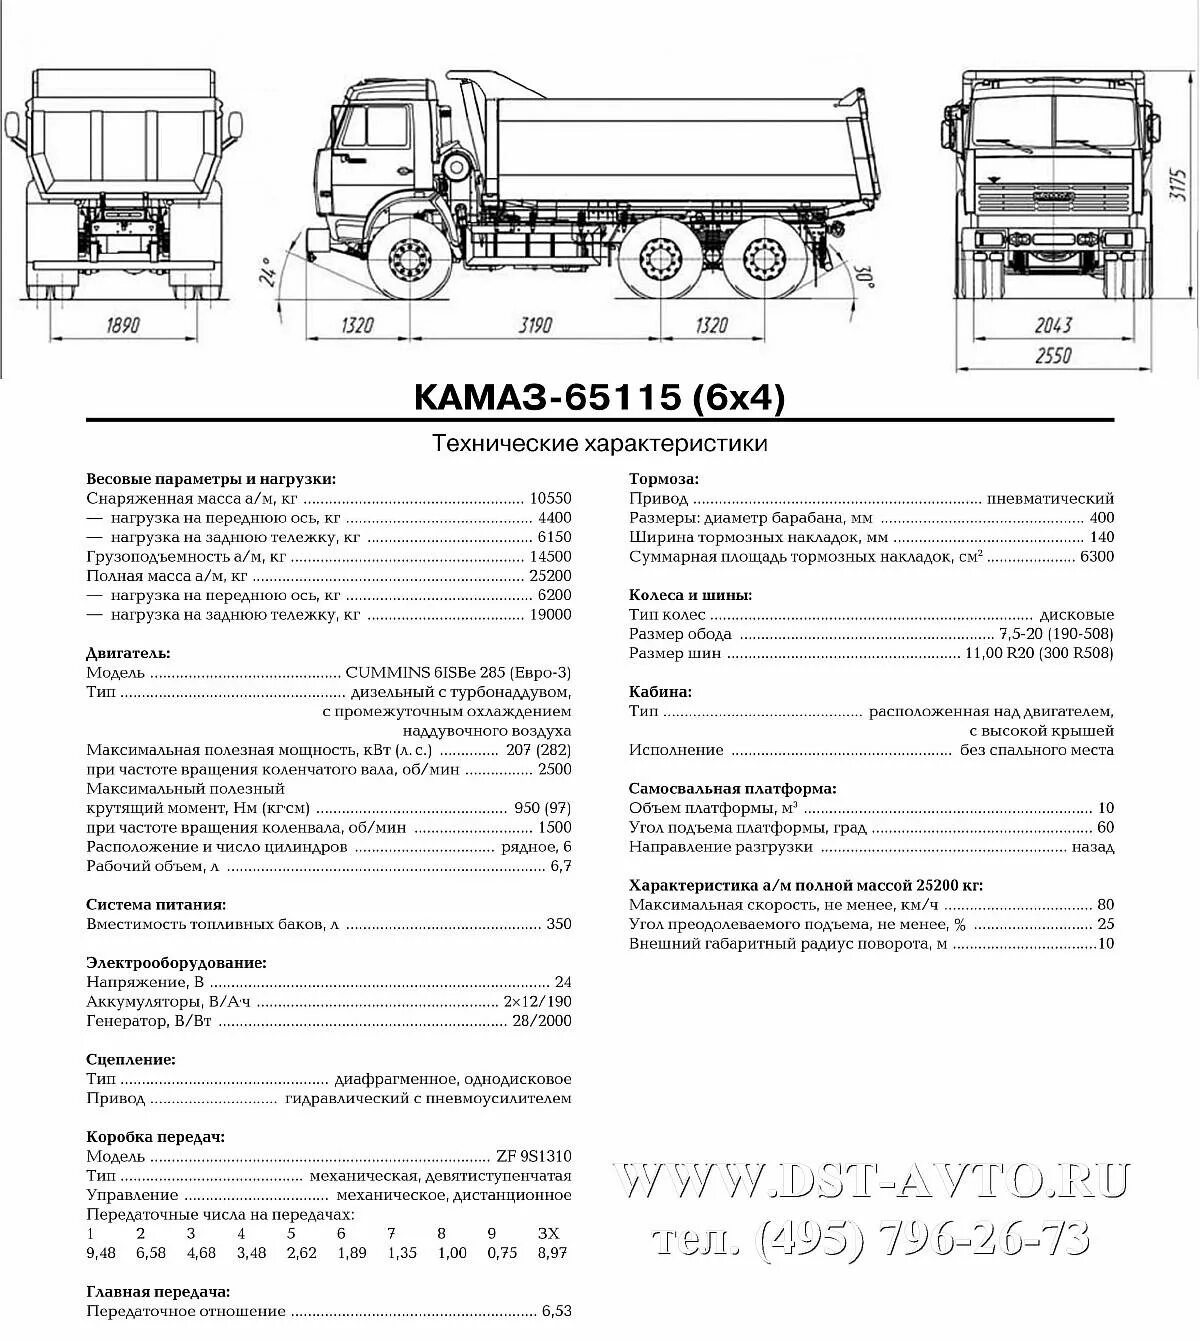 Технические характеристики KAMAZ-5320/. Габариты кузова КАМАЗ 55111 самосвал. Габариты кузова КАМАЗ 65115 самосвал. ТТХ КАМАЗ 6520 самосвал.